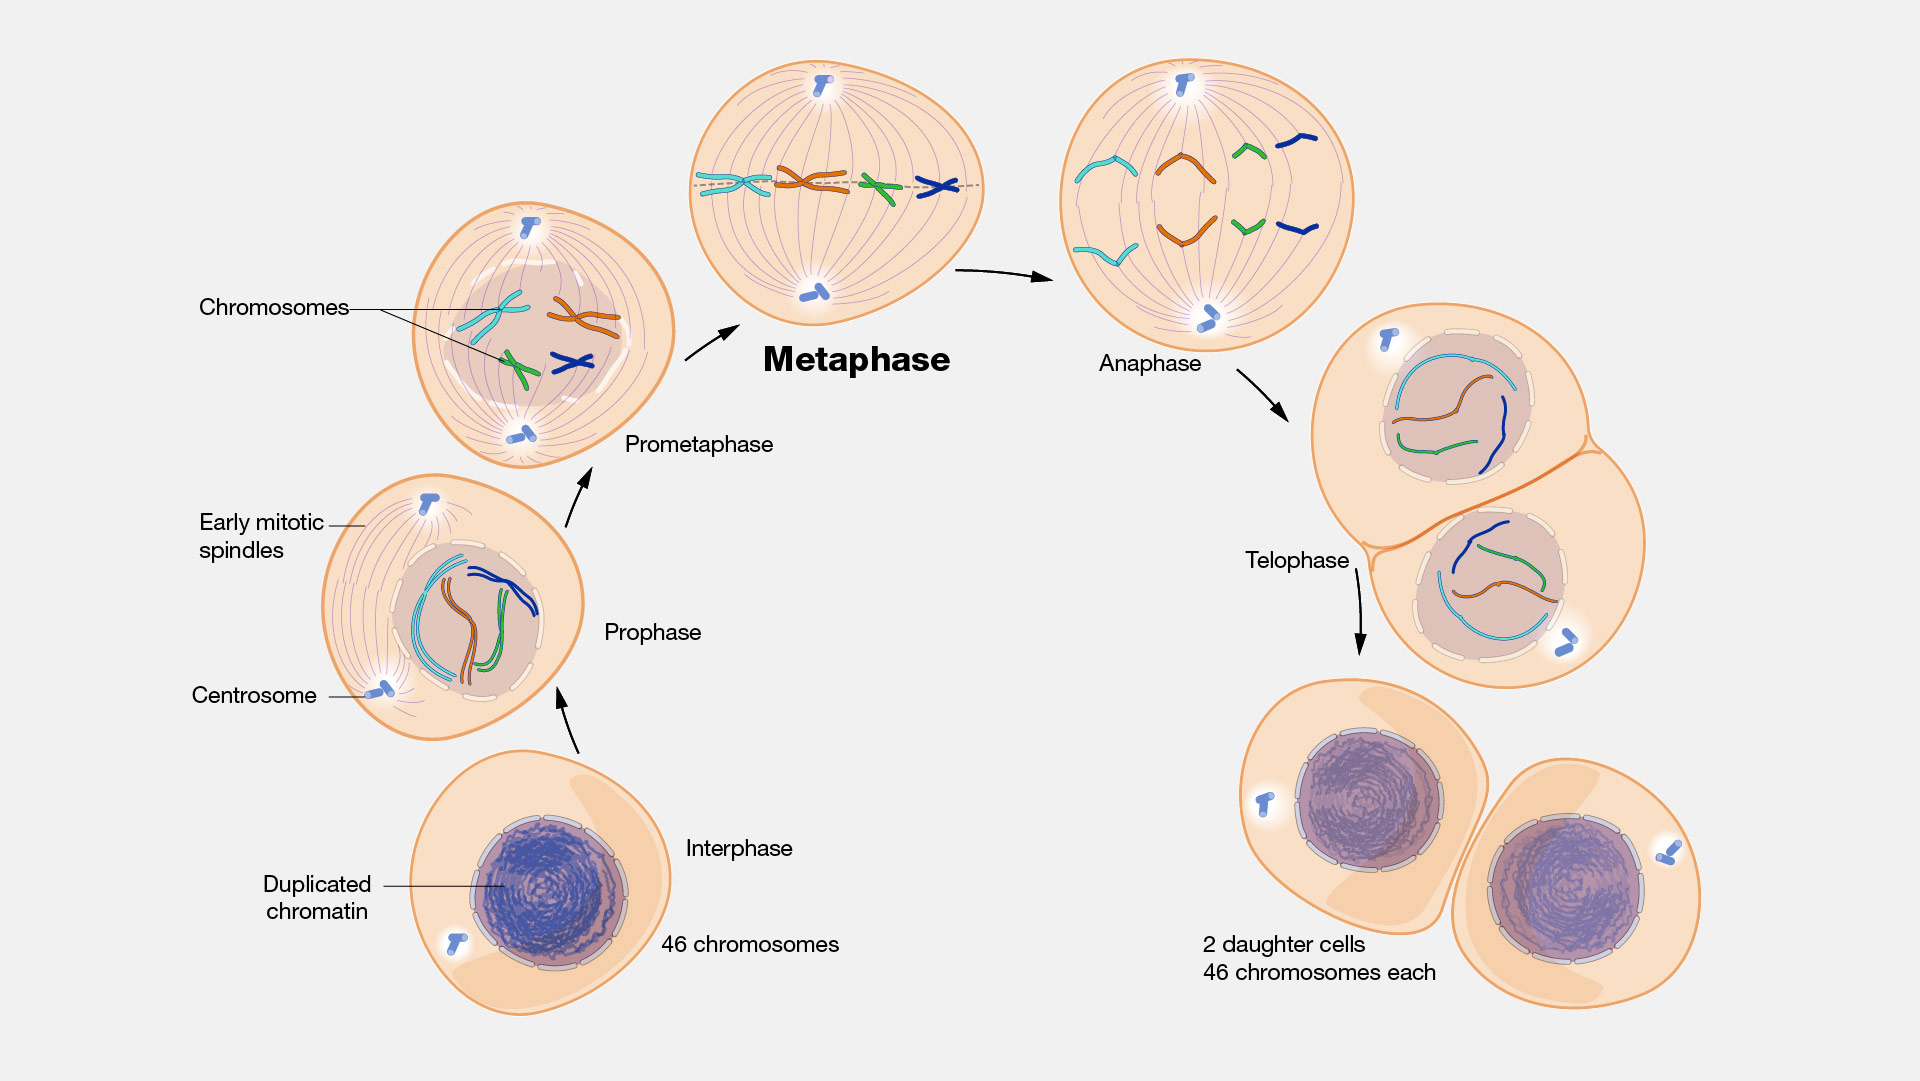  Metaphase